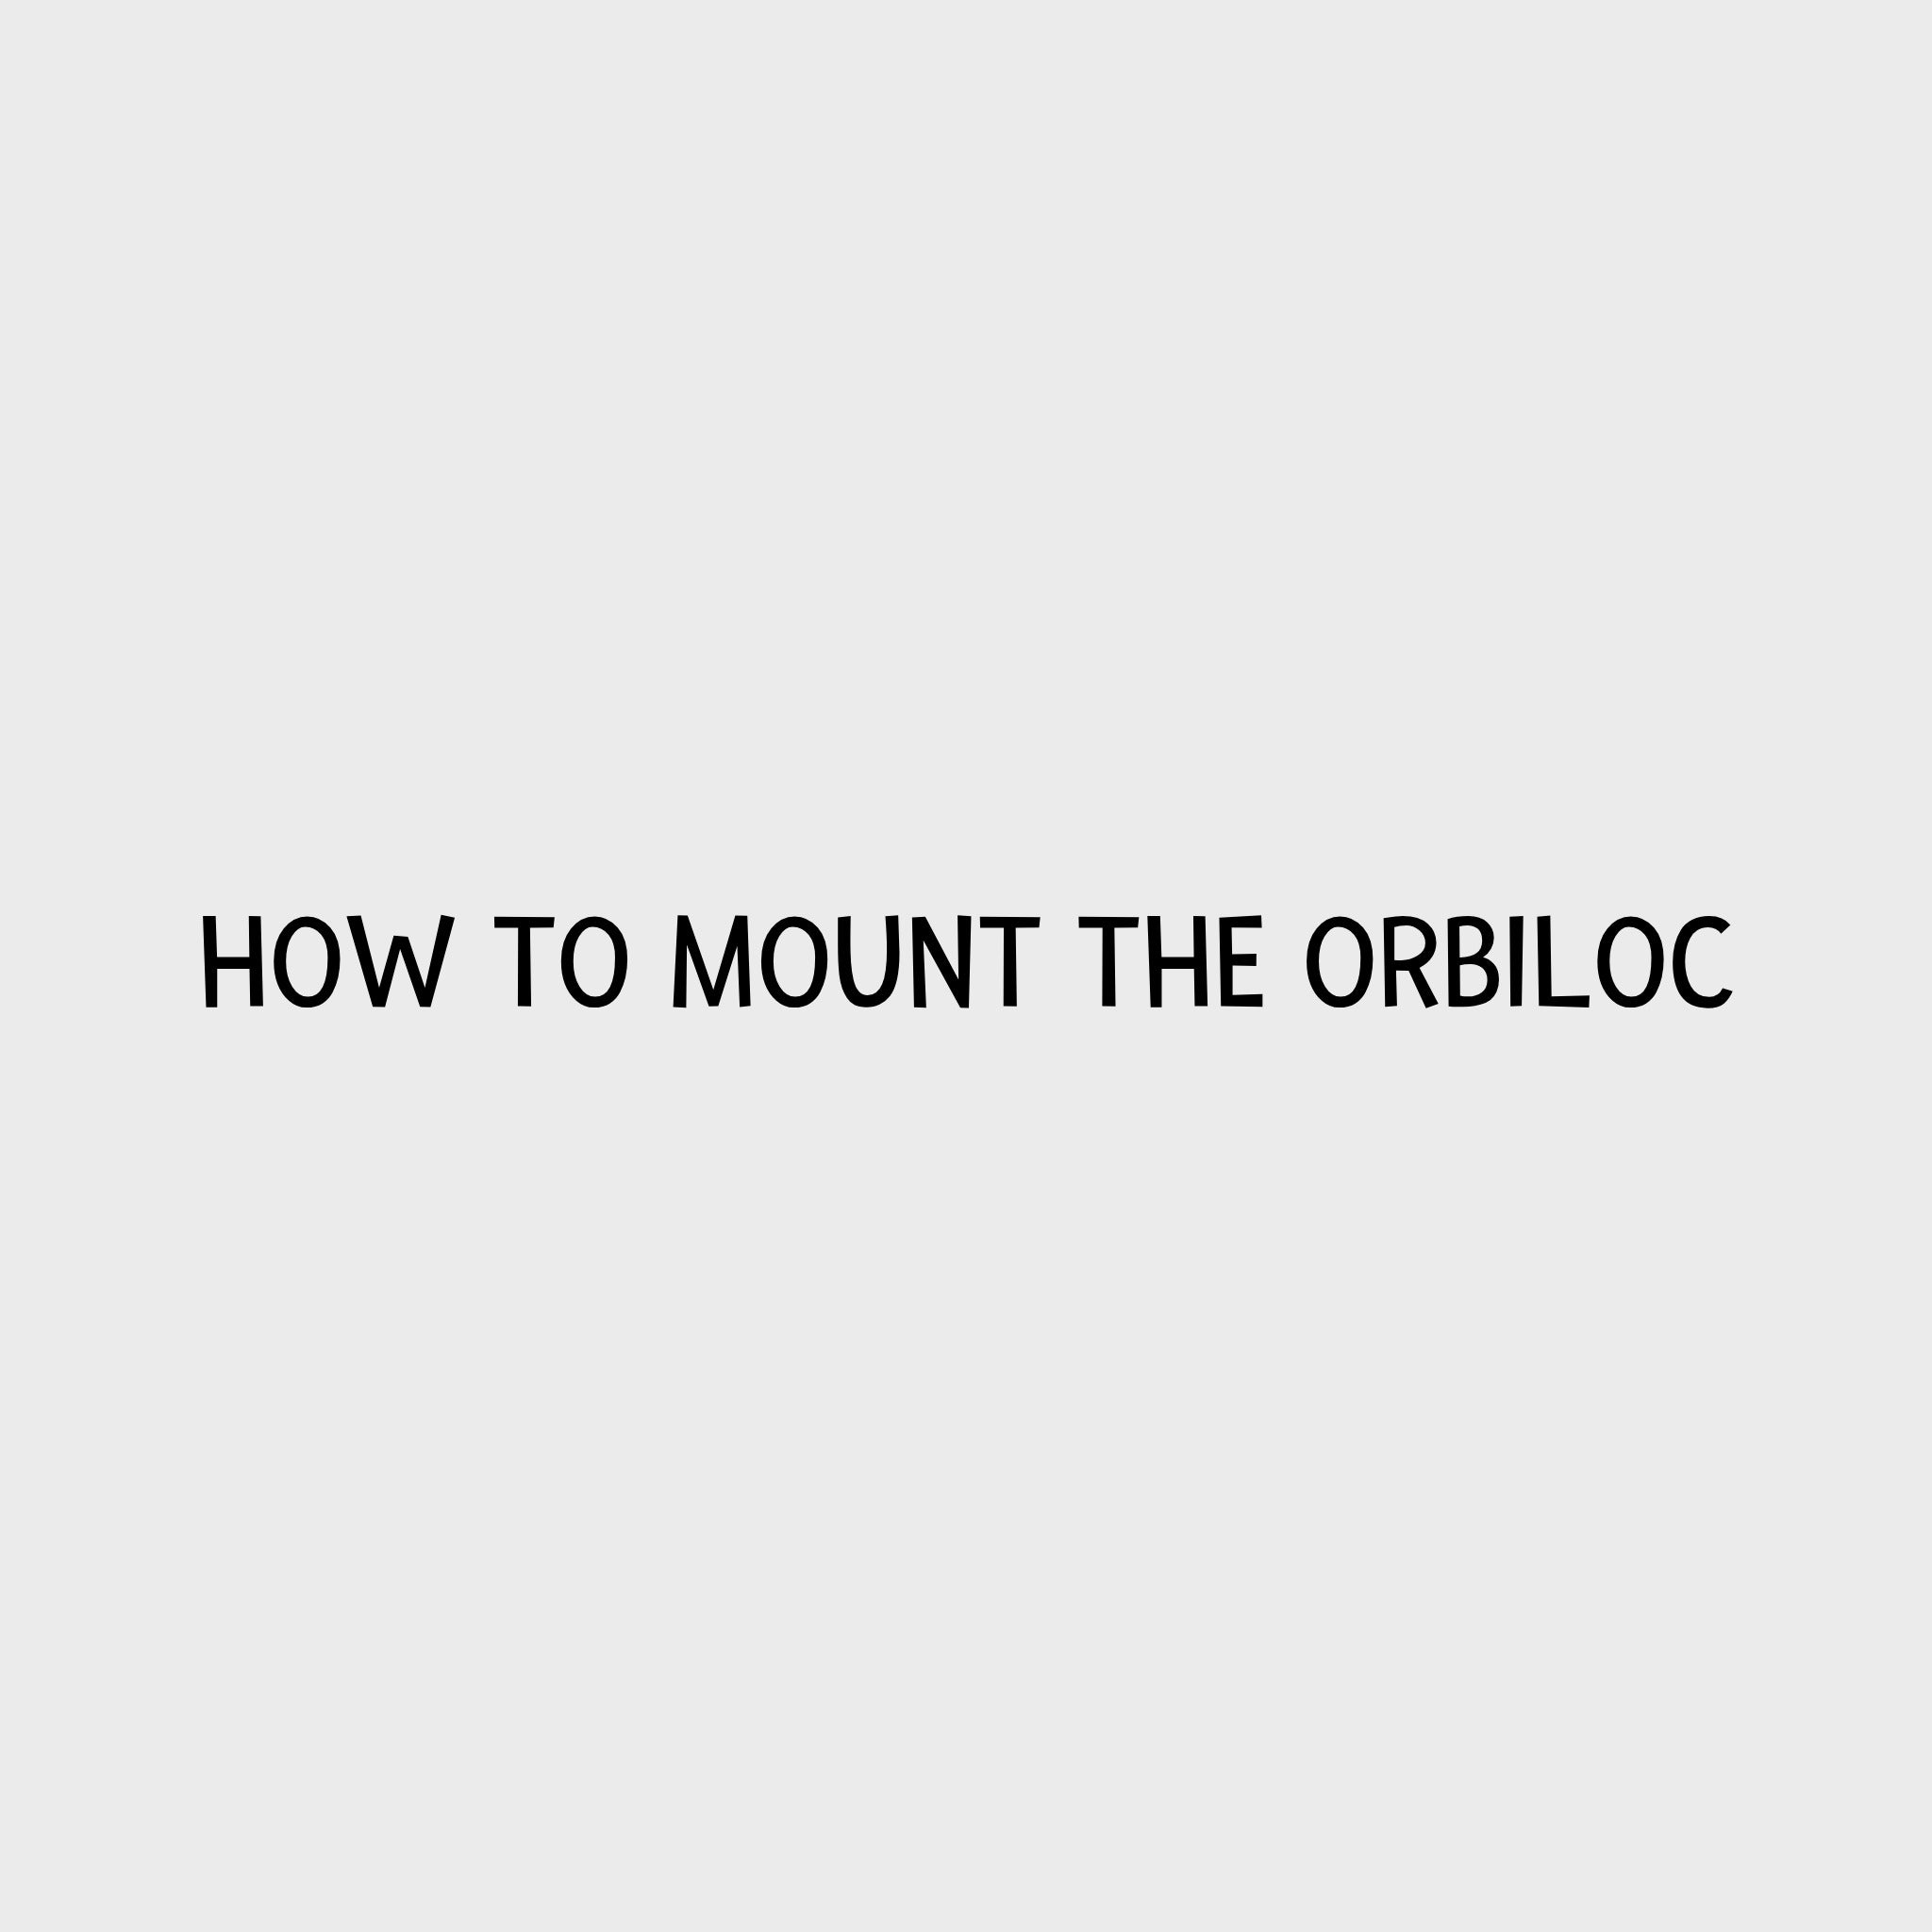 Video - How to mount the Orbiloc